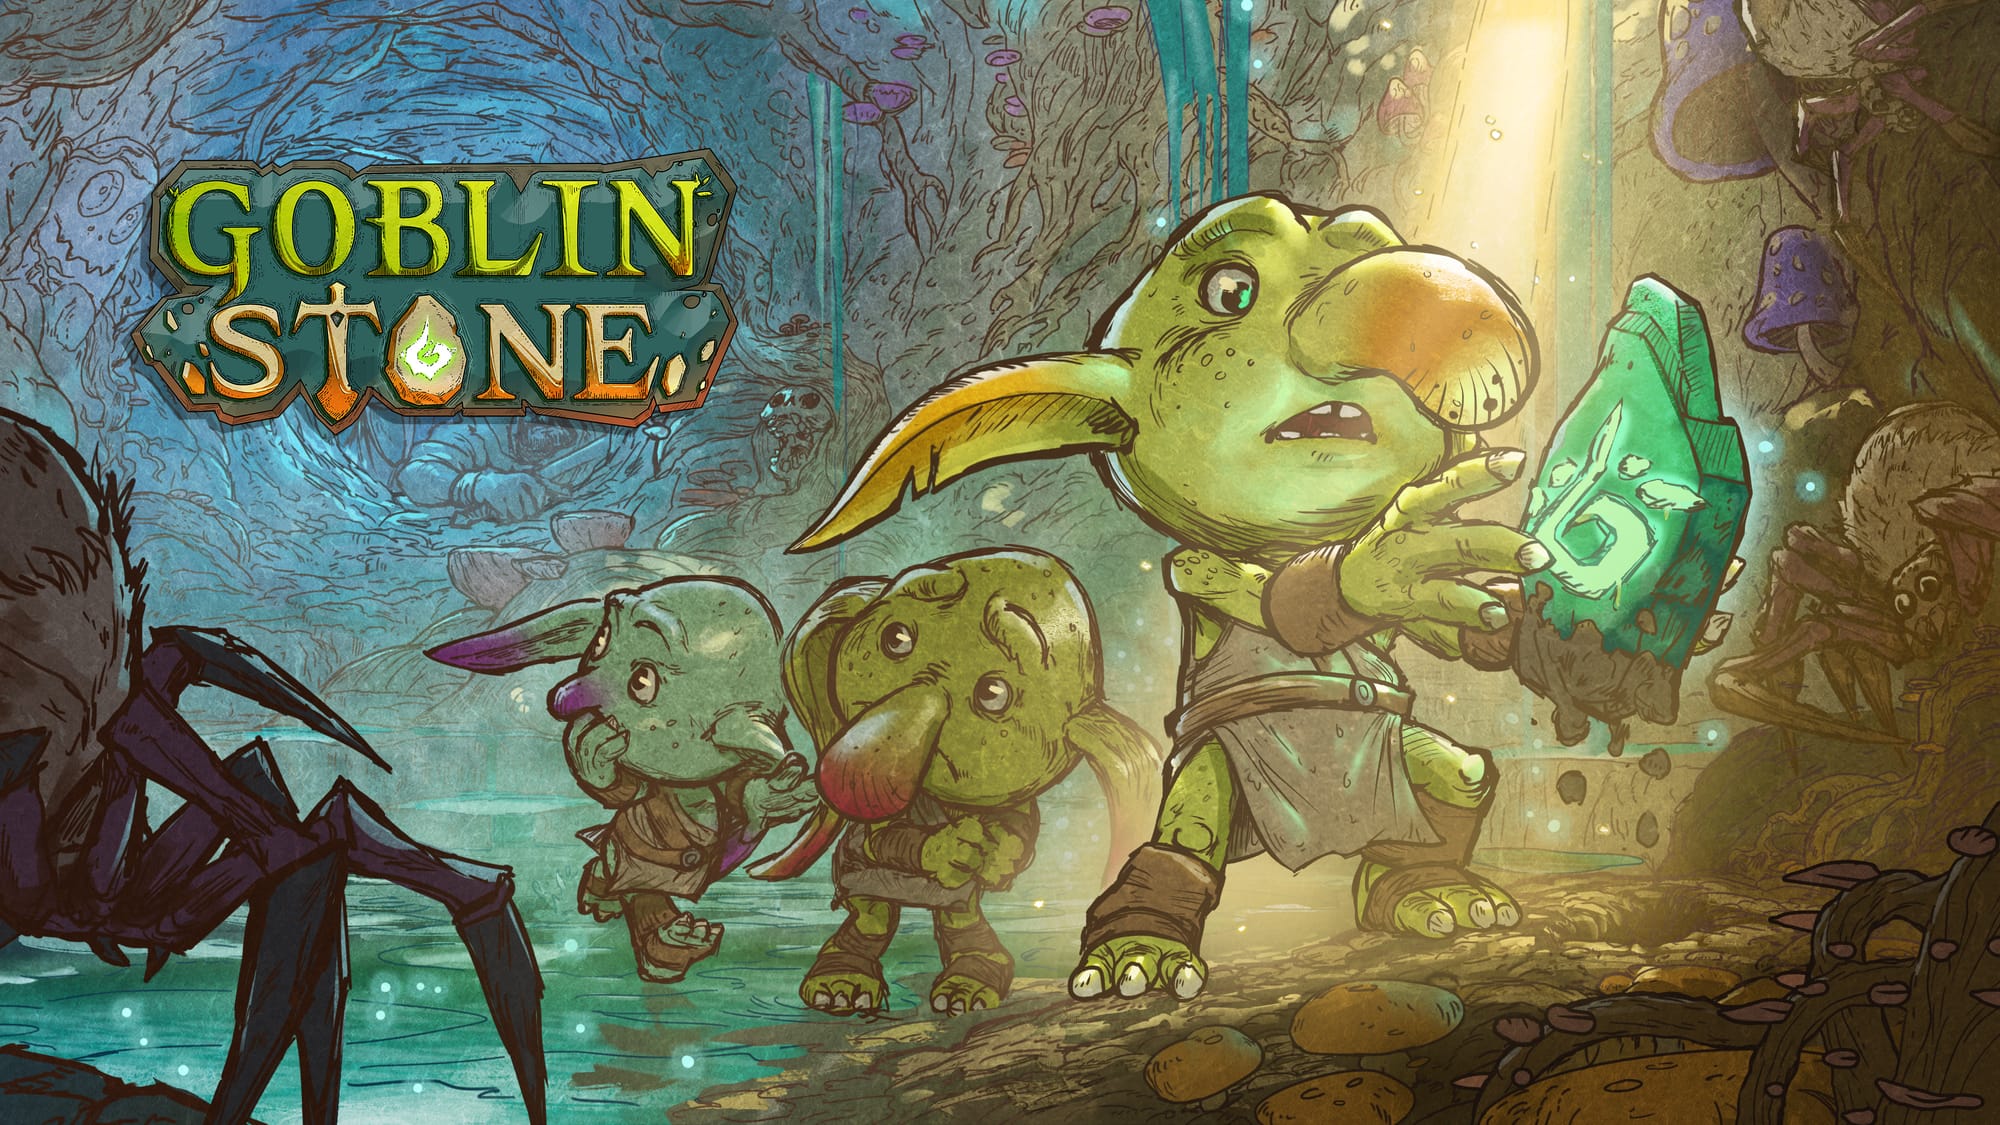 Three goblins run through their caves. One has discovered a magical stone.